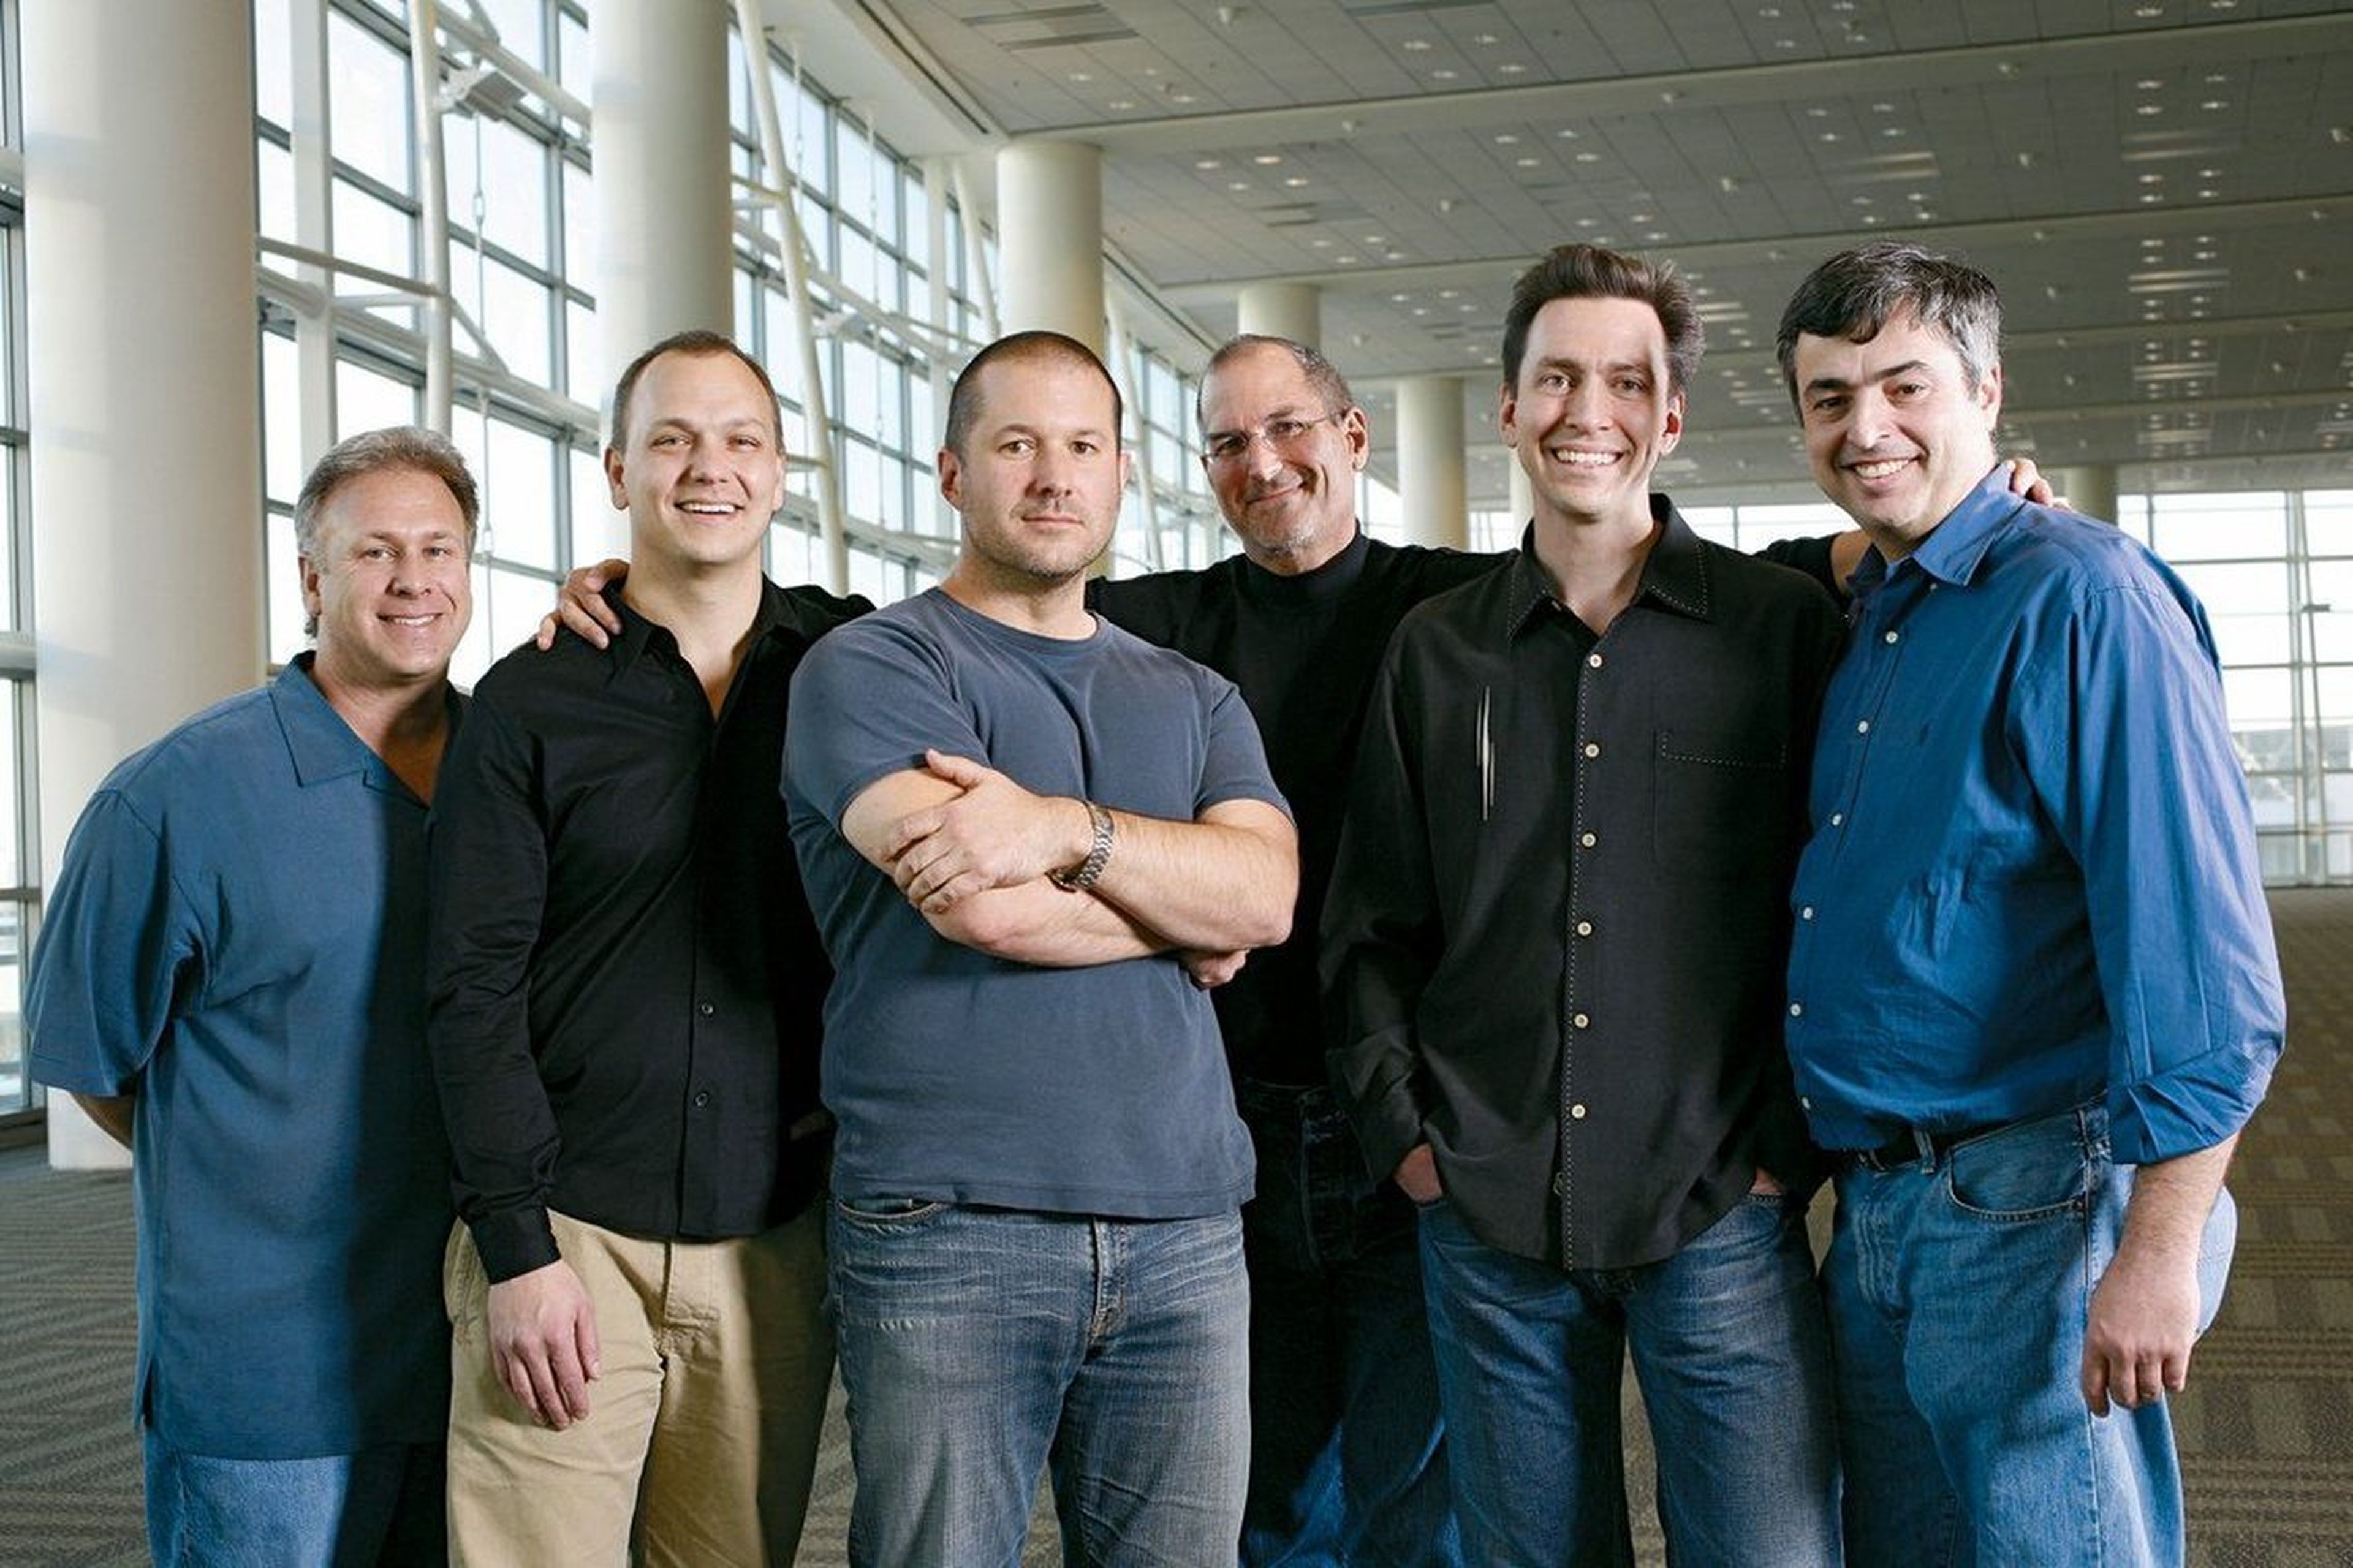 De izquierda a derecha: Phil Schiller, Tony Fadell, Jony Ive, Steve Jobs, Scott Forstall y Eddy Cue.